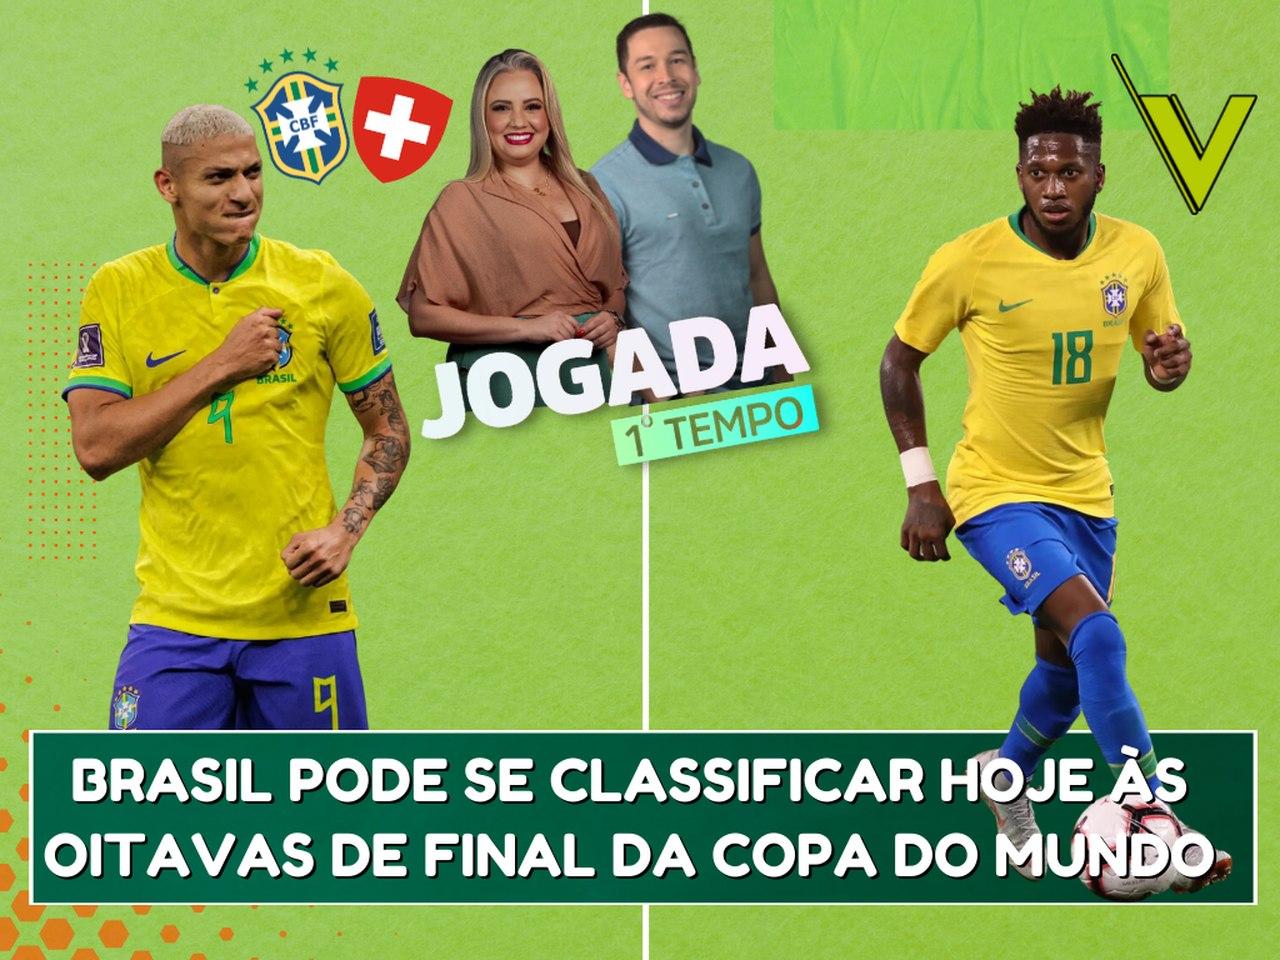 Final da Copa de 2018 é destaque em reprises da TV nesta terça - 21/04/2020  - Esporte - Folha